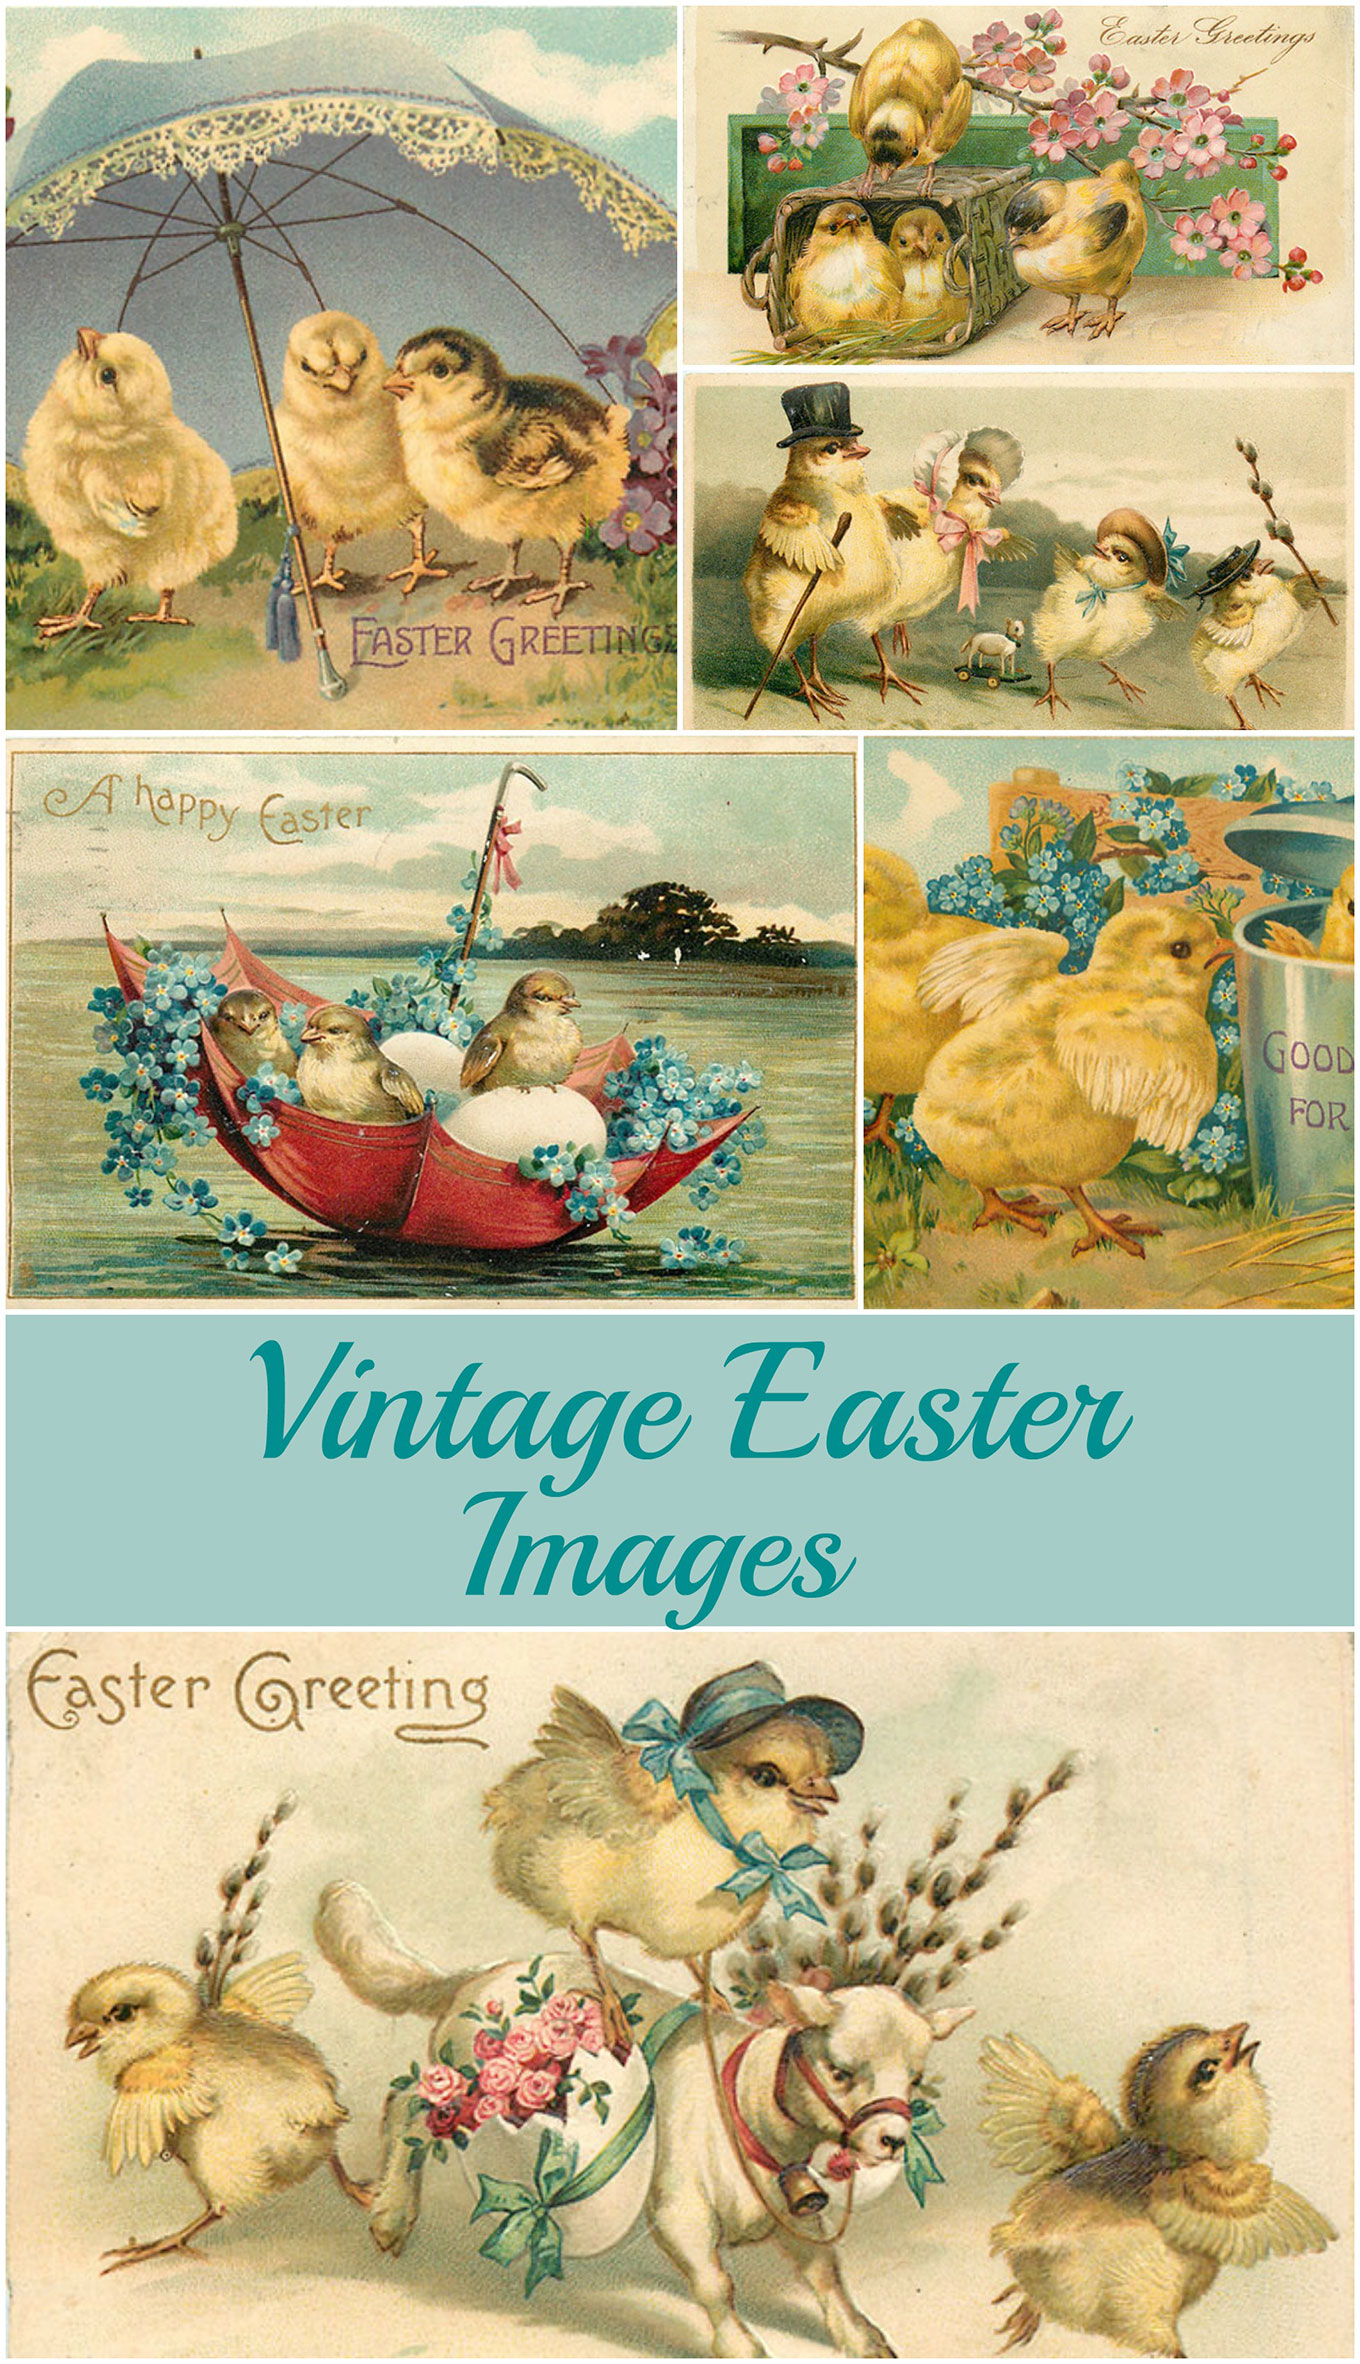 Vintage Easter postcards.